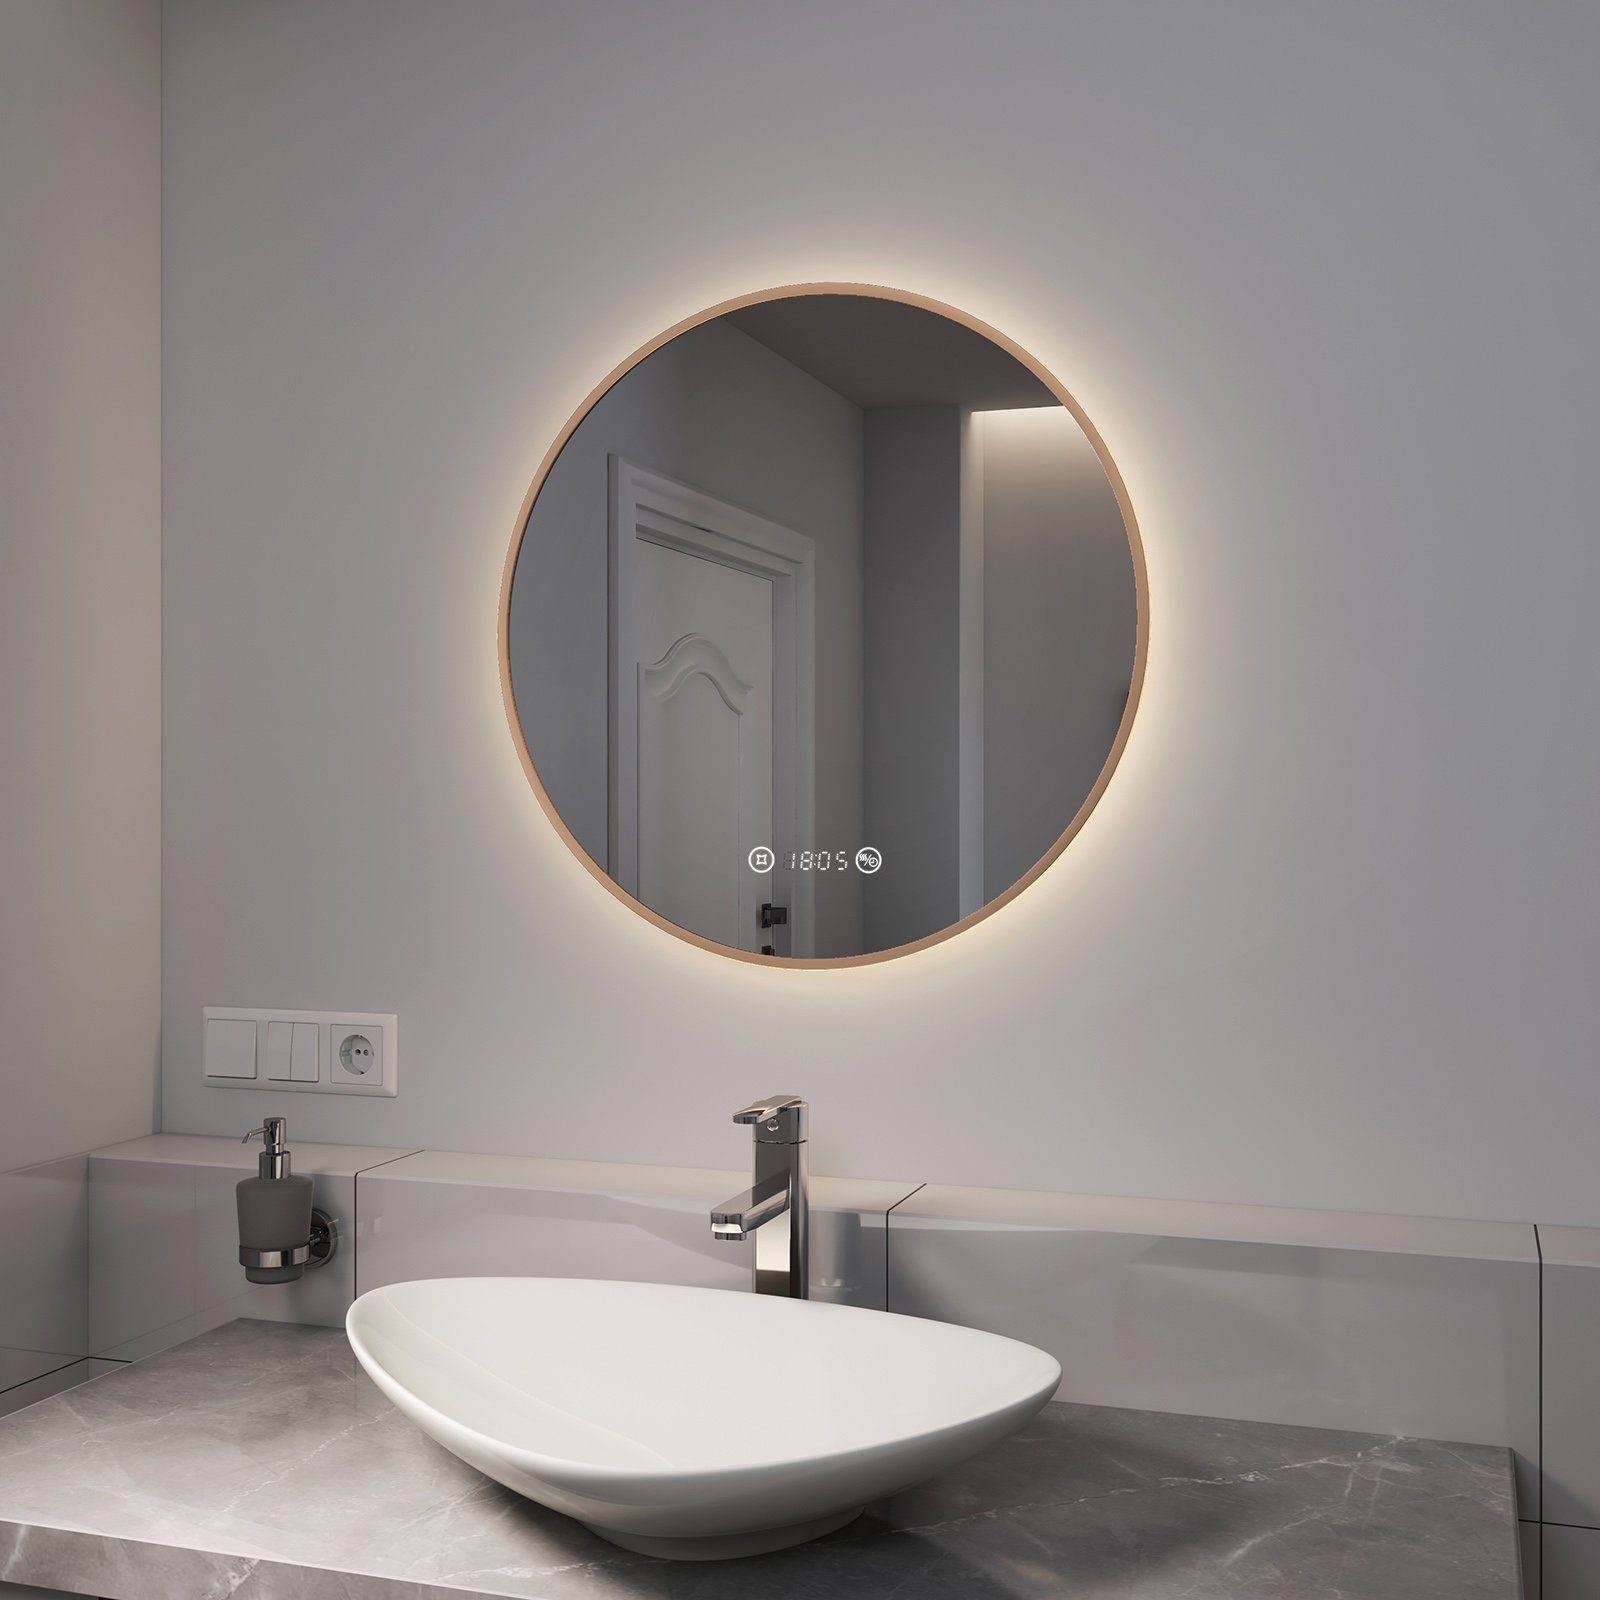 EMKE Badspiegel EMKE LED Badspiegel Rund Spiegel mit Beleuchtung Gold, mit  Touch, Antibeschlage, Uhr, Temperatur, Dimmbar, Memory-Funktion